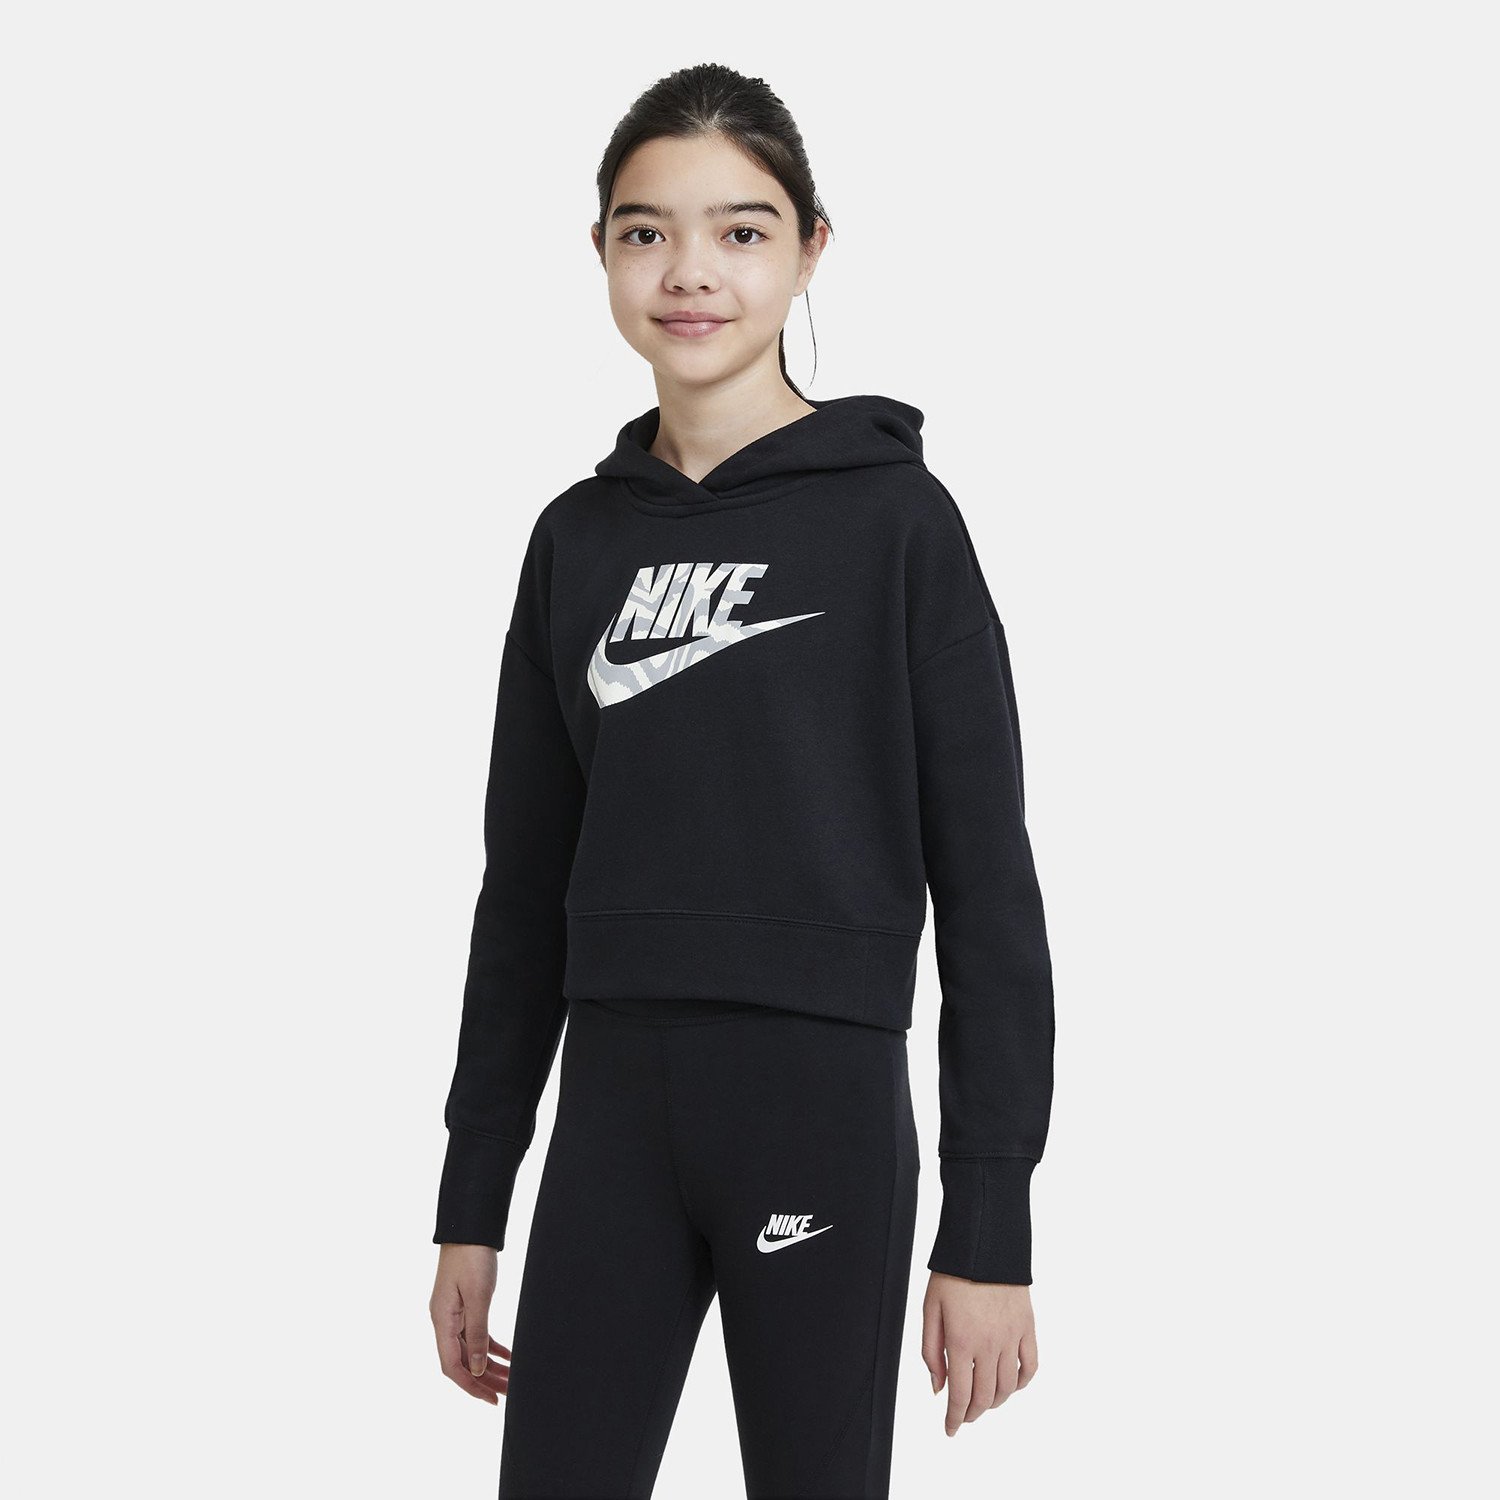 Nike Sportswear Girls' Cropped Παιδική Μπλούζα με Κουκούλα (9000069744_1469)